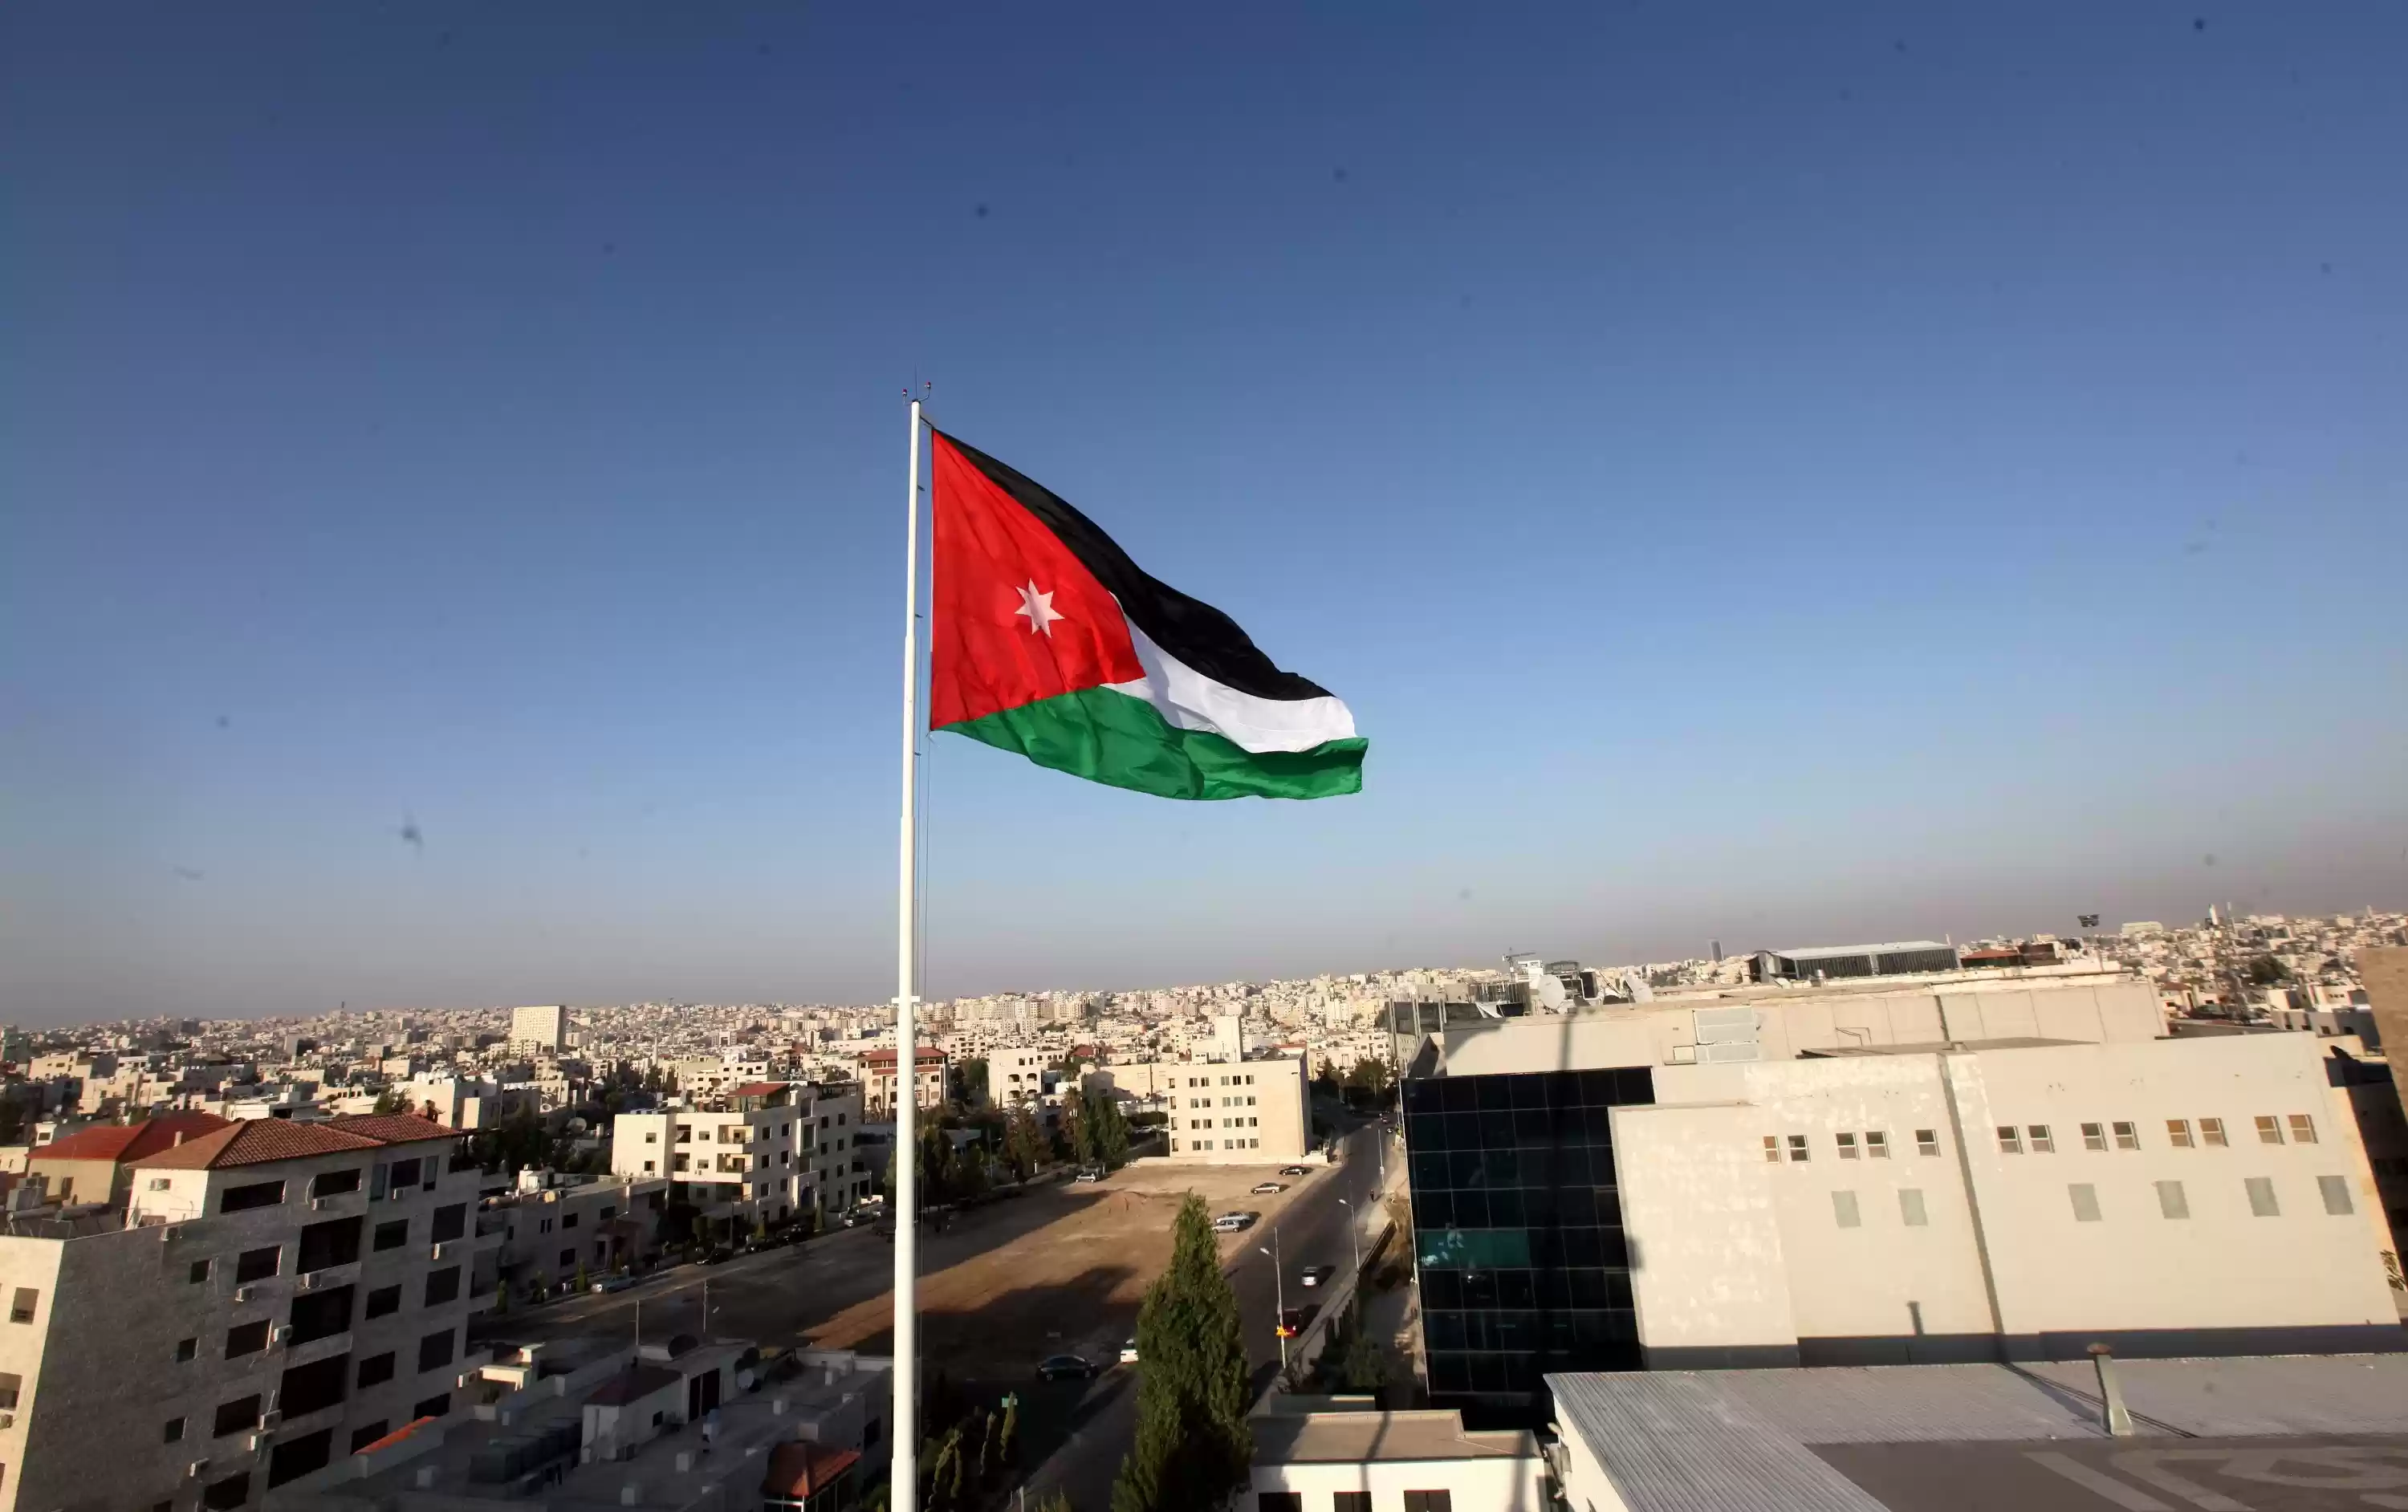 دراسة تُظهر عدم اهتمام الأردنيين بالأحزاب والسياسة